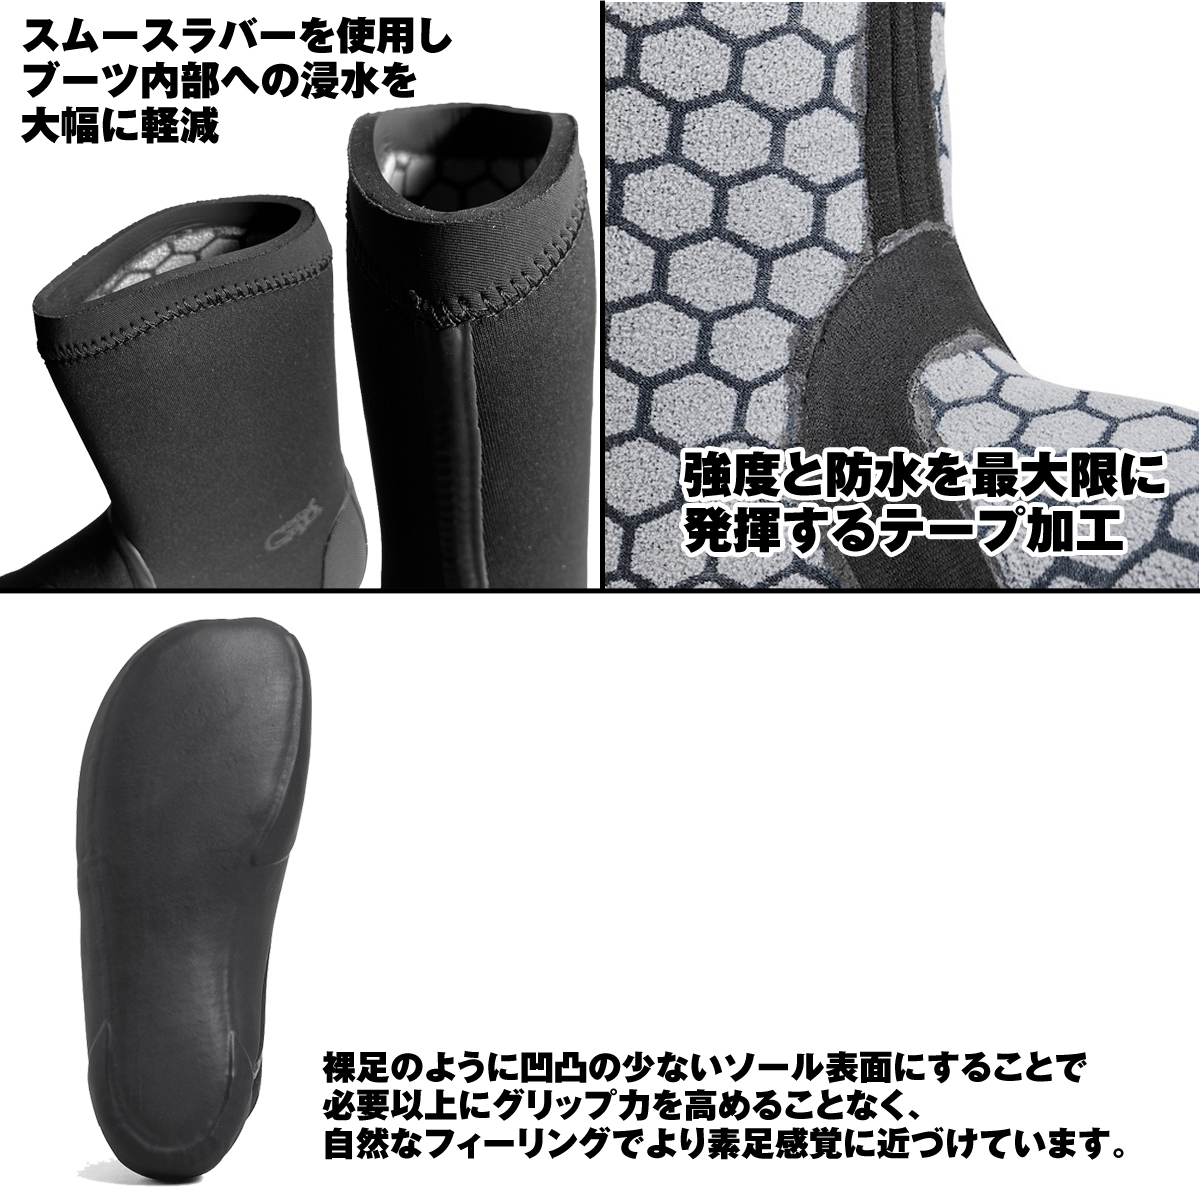 サーフィン サーフボード 初心者 ビギナー ソックス ブーツ Graphene Boots Round 5/6mm ソックス型ブーツ 防寒 耐寒  SURF GRIP サーフグリップ :sg-gbotr56:X-SPORTS - 通販 - Yahoo!ショッピング